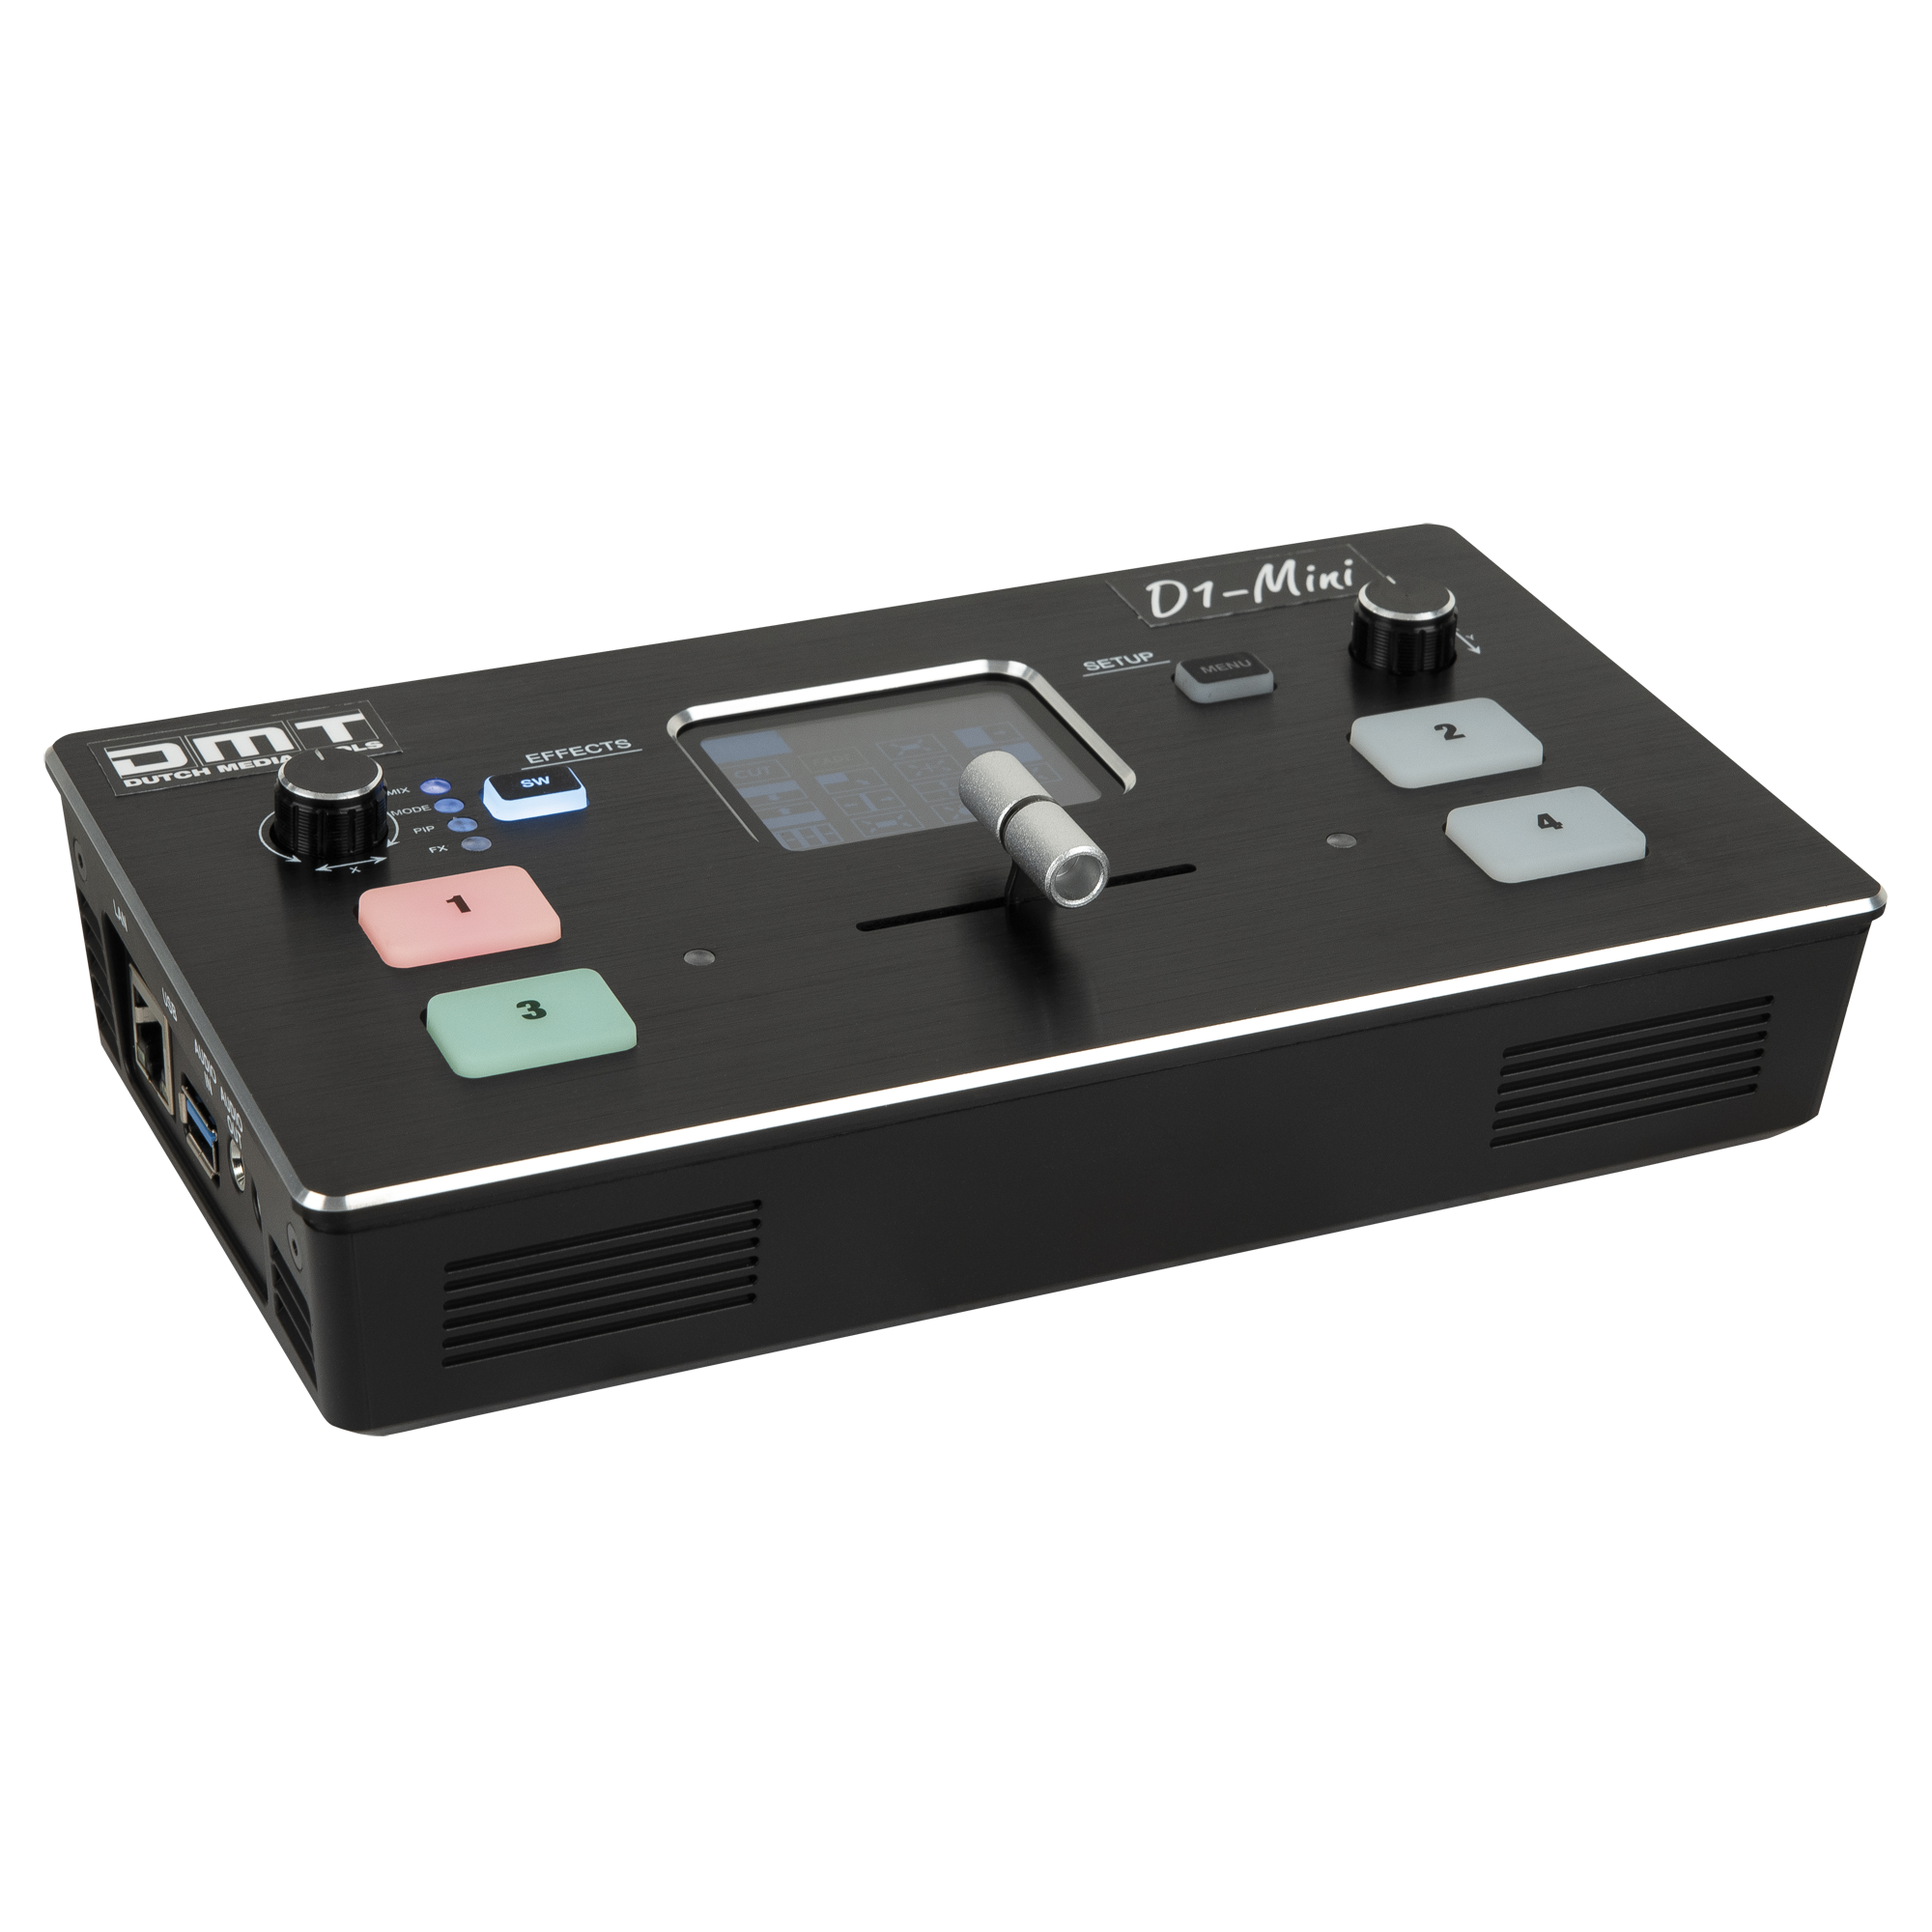 D1 Mini Video Switcher - Onlinediscowinkel.nl